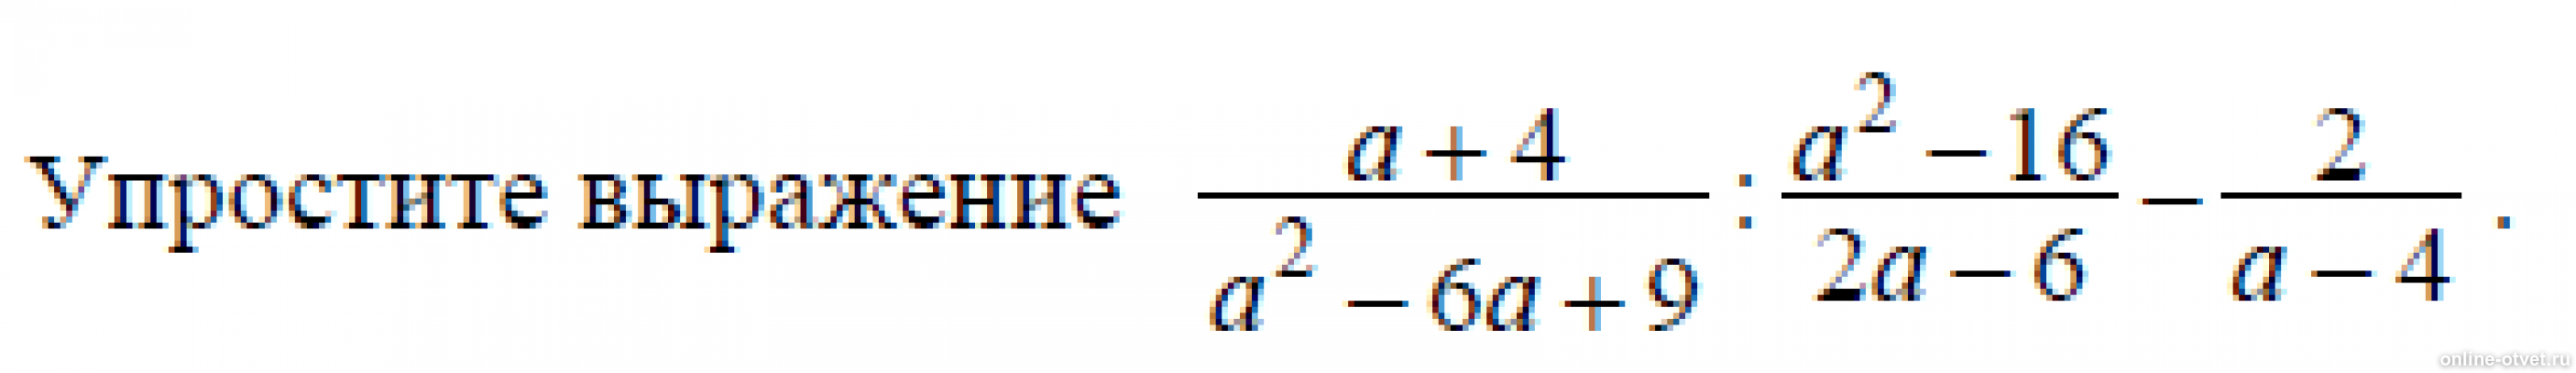 Упрости выражение c c c2. A-4/A^2+4+16 упростить выражение. Упростите выражение 4с с-2 с-4 2. Упростите выражения (a-8)^2. Упростите выражения а+2 а-3-4-а а+4.